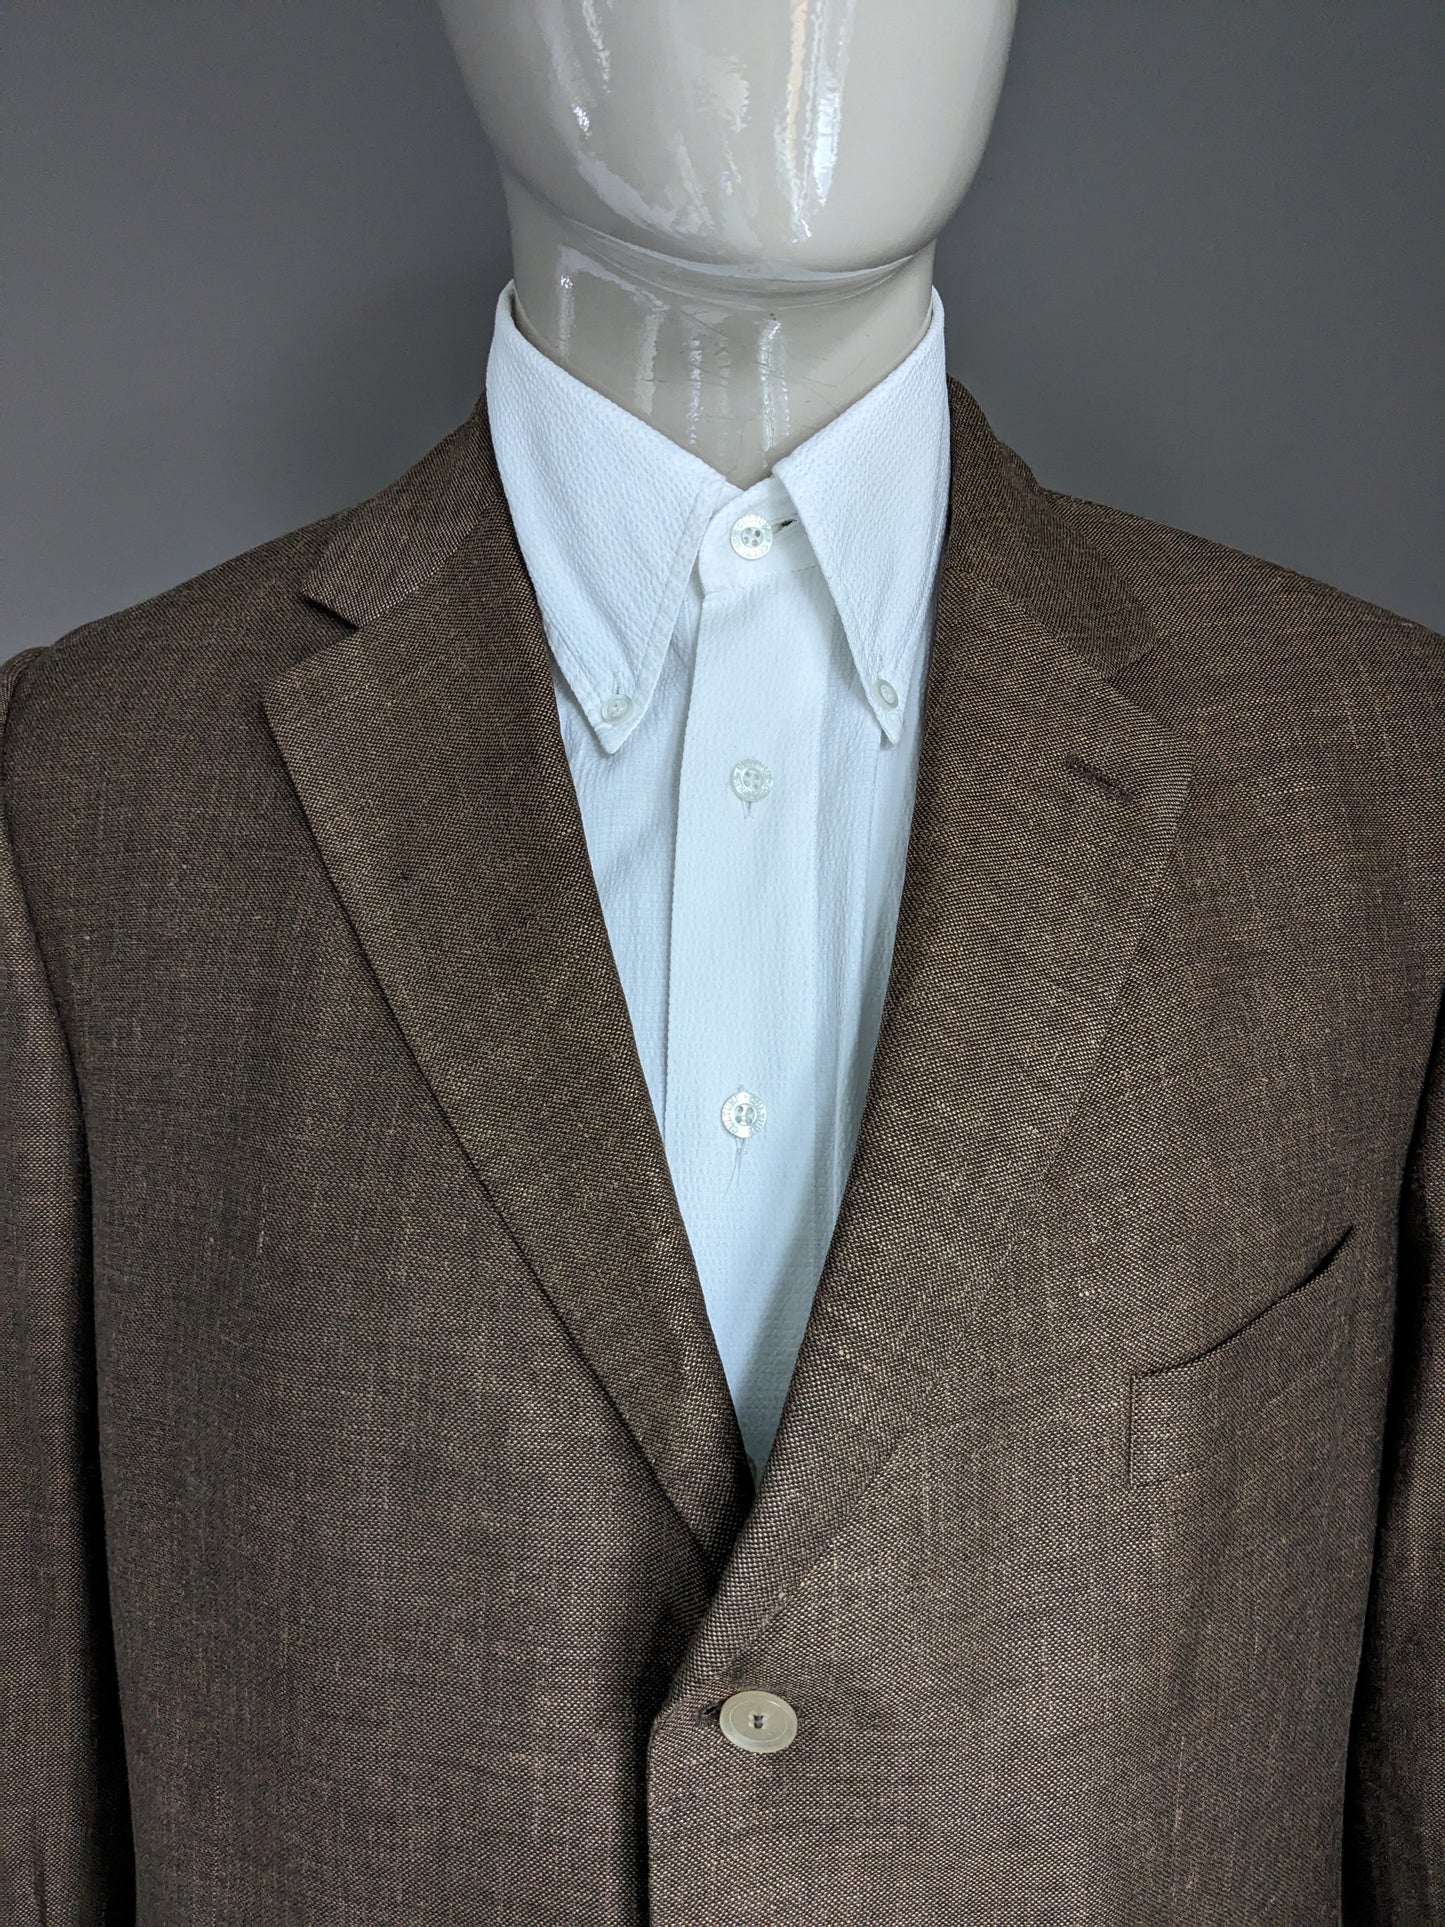 Paul Dierckx woolen and linen jacket. Brown mixed. Size XL / 56.